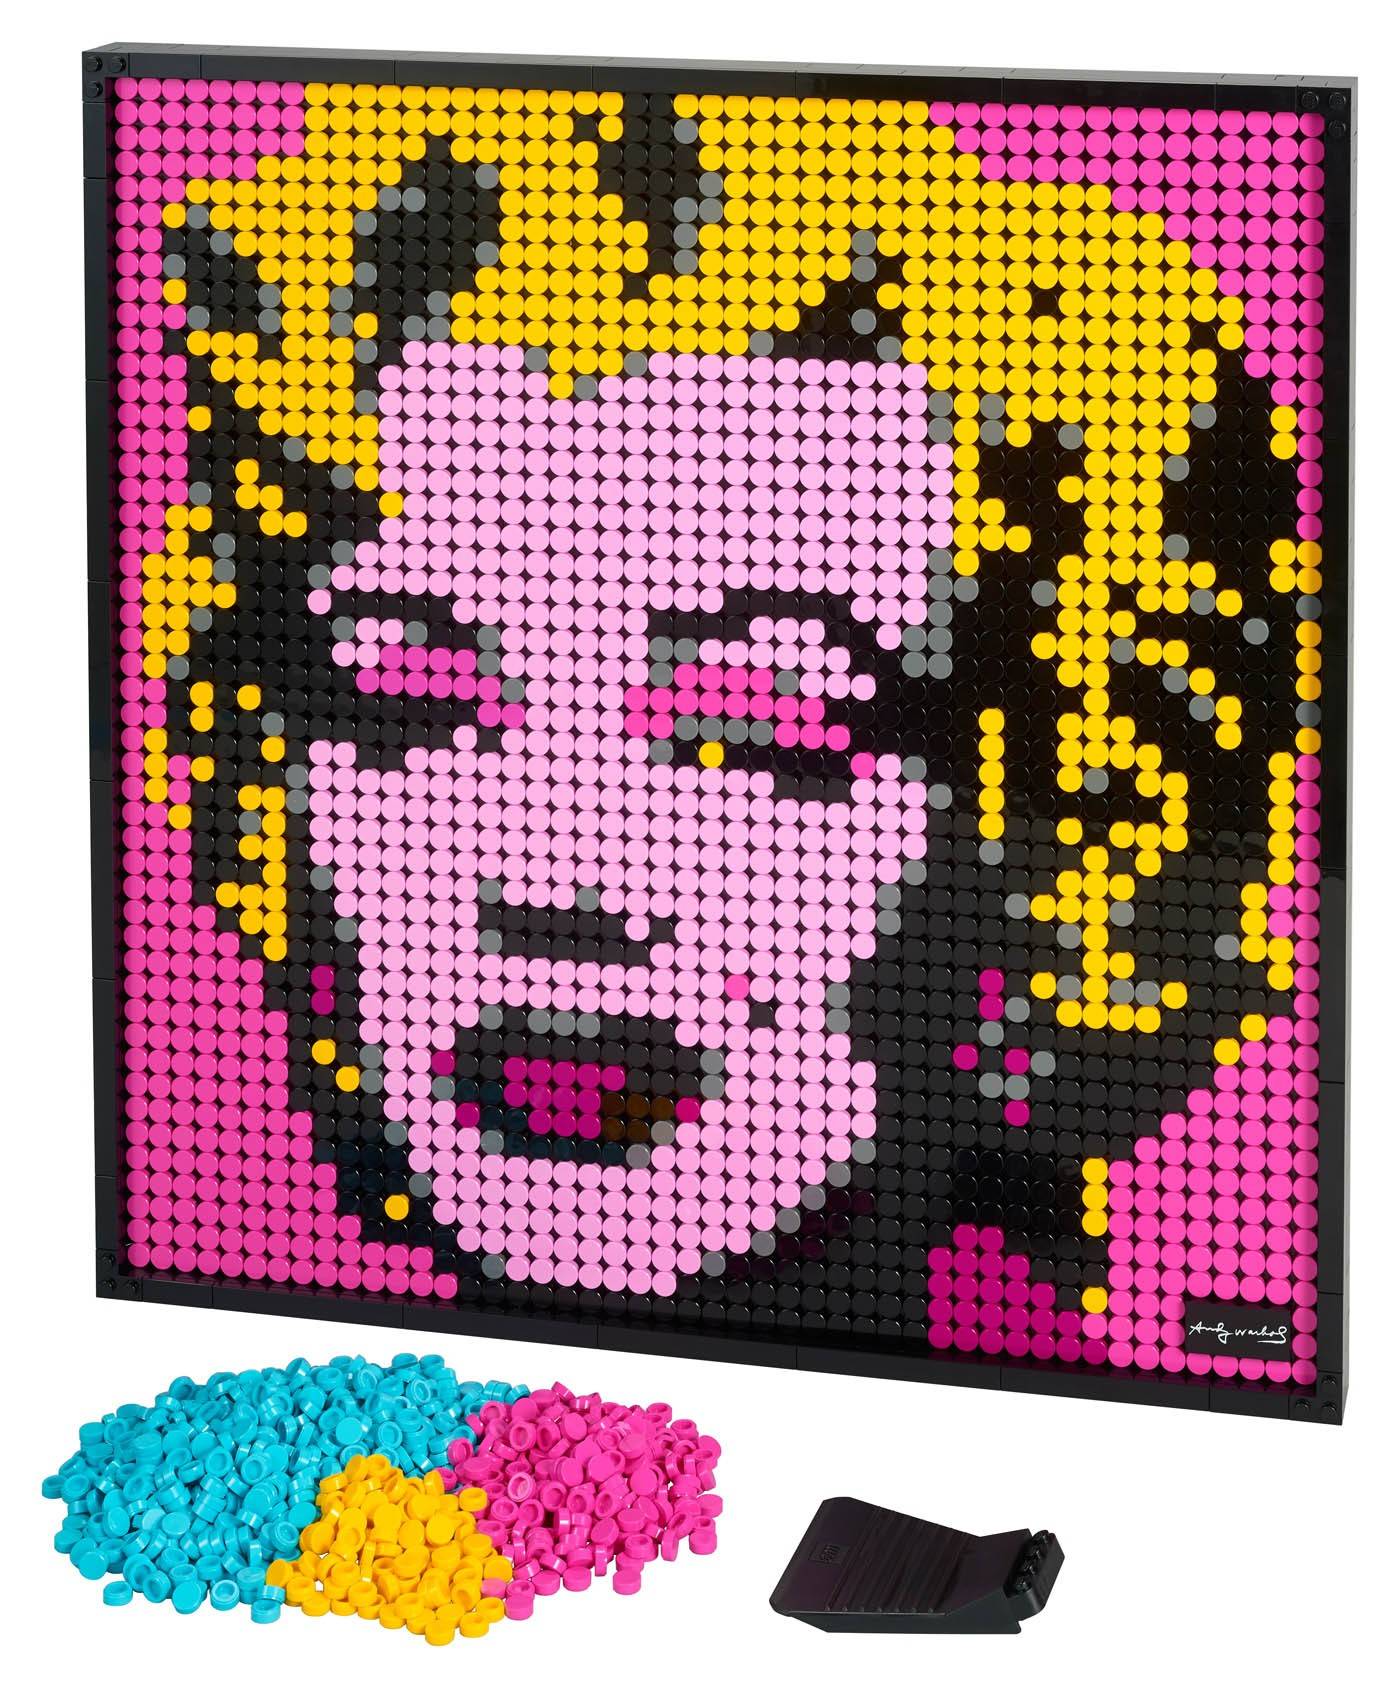 LEGO Art Marylin Monroe Andy’ego Warhola obraz 4w1 31197